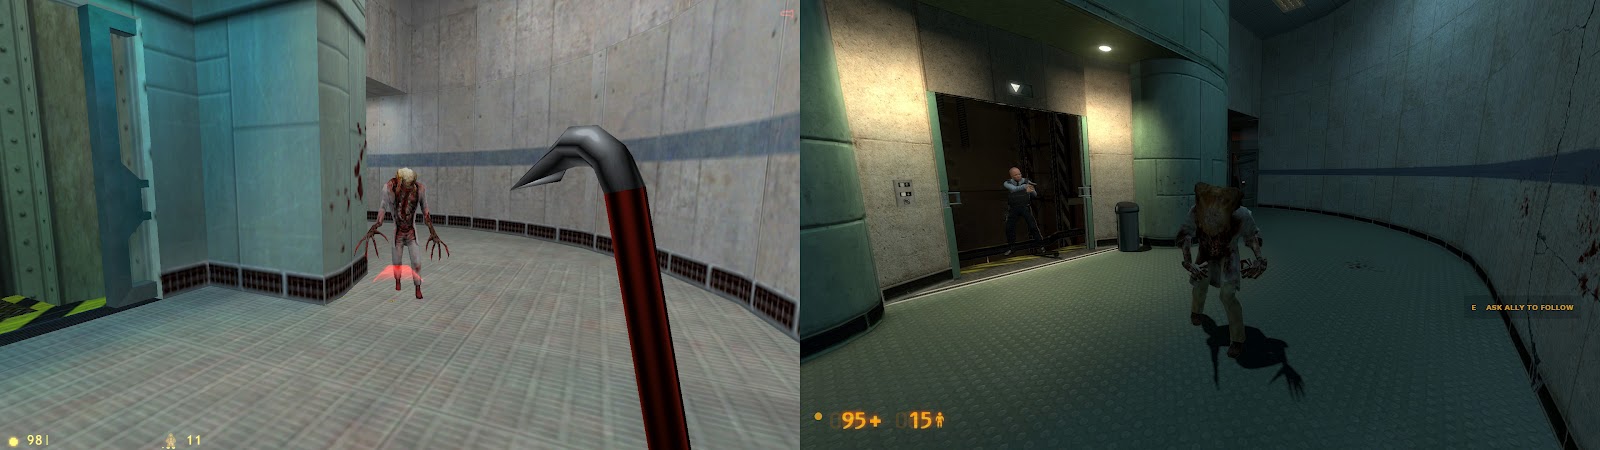 Half life по порядку. Ремастер half Life Black Mesa. Half Life 1 vs Black Mesa. Half Life 1 vs Black Mesa Xen. Монстры халф лайф Блэк Меса 2.